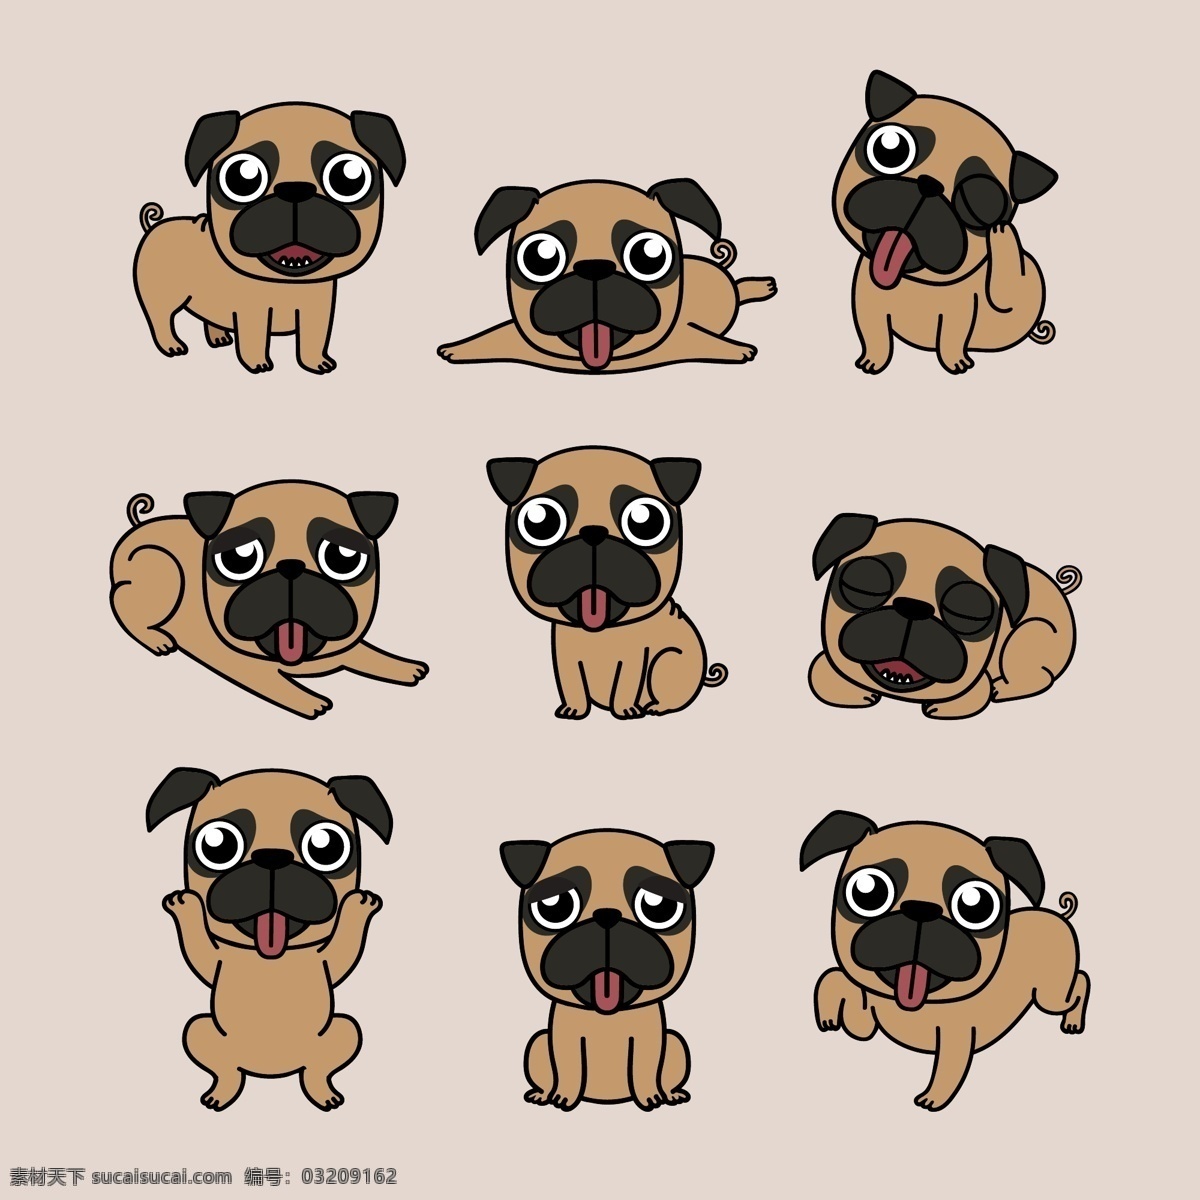 表情 插画 动物 搞笑 狗 卡通 卡通狗 可爱 可爱宠物 脸 犬 舌头 手绘 不同 姿势 的卡 通 语言